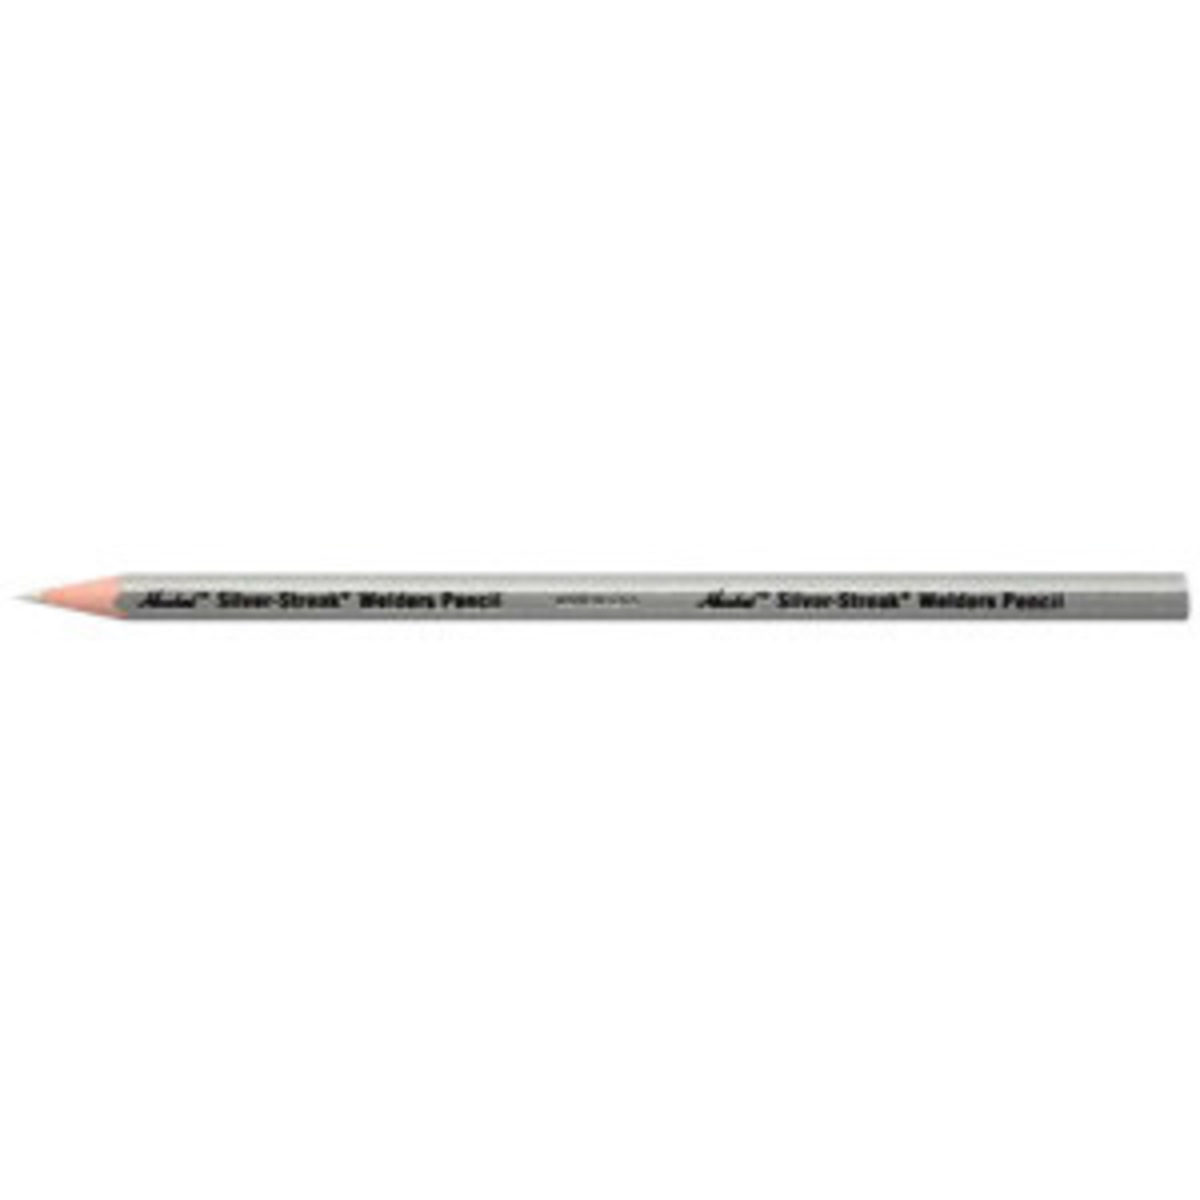 Welder's Pencil